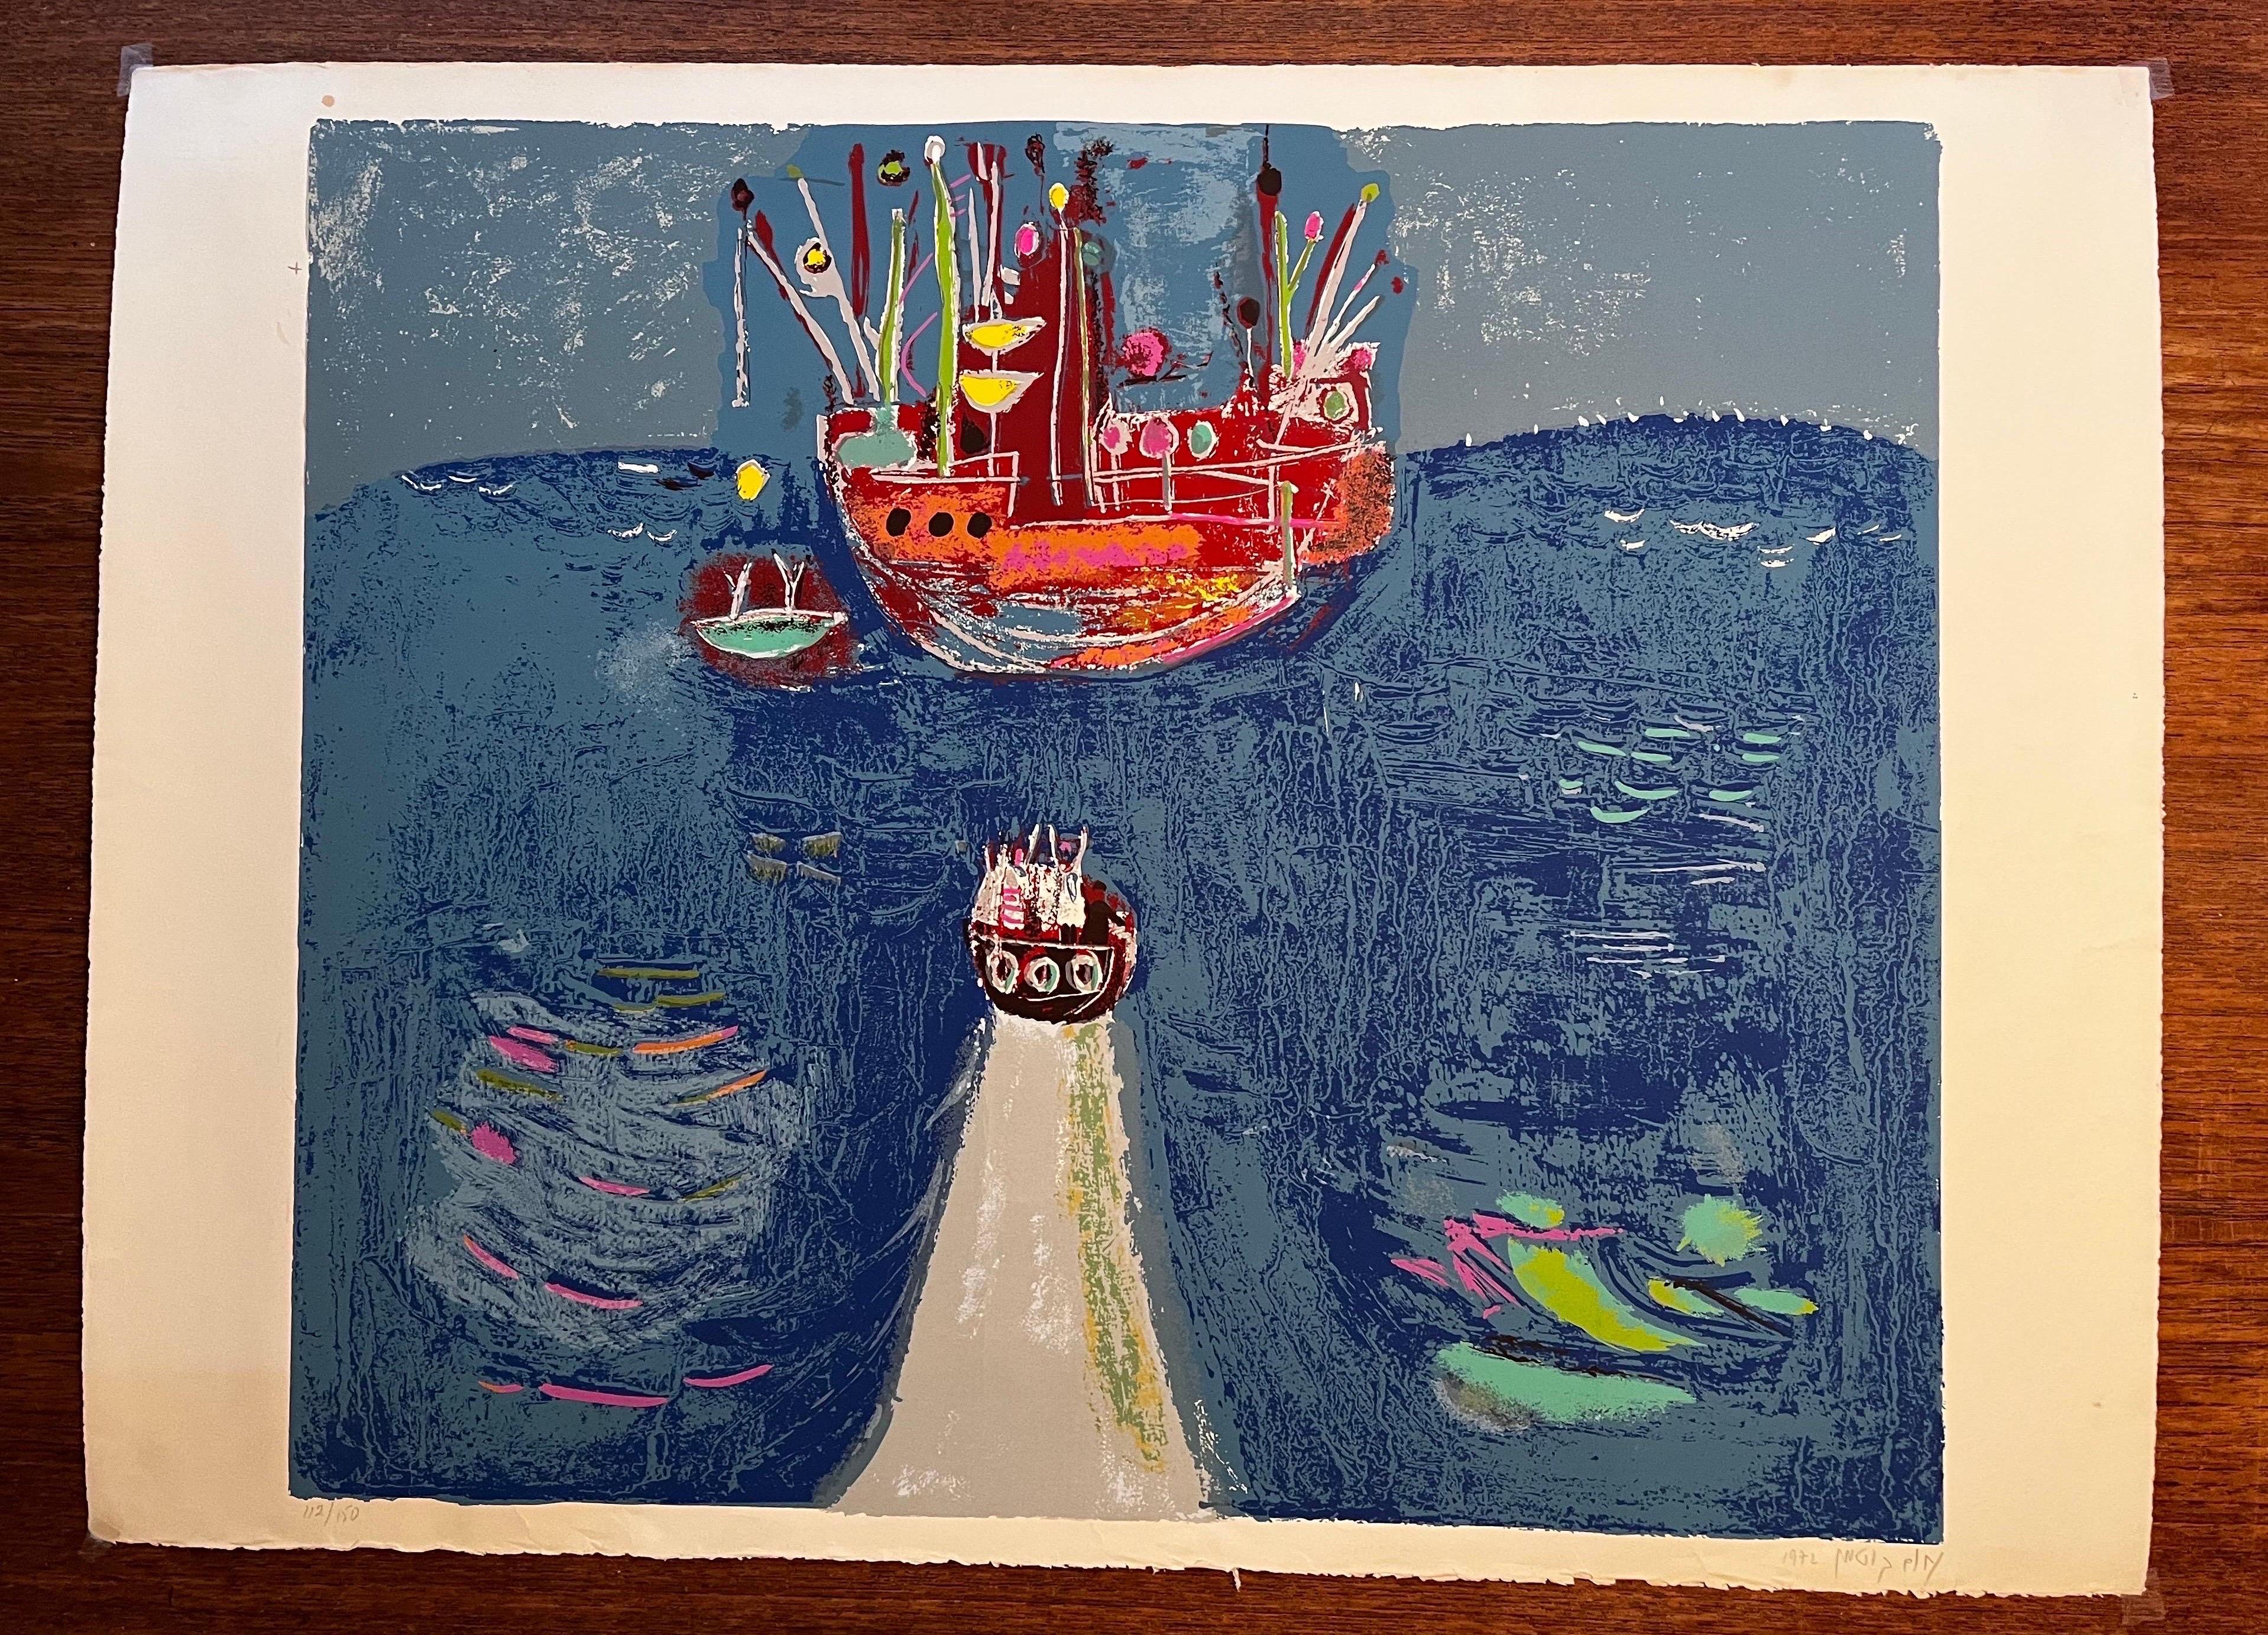 Image abstraite de bateaux - Lithographie - signée
Daté de 1972 - 112 ou 150

Très belle image abstraite avec de belles couleurs.
Il sera superbe une fois encadré.

quelques taches le long du bord
un pli vertical - très difficile à voir 